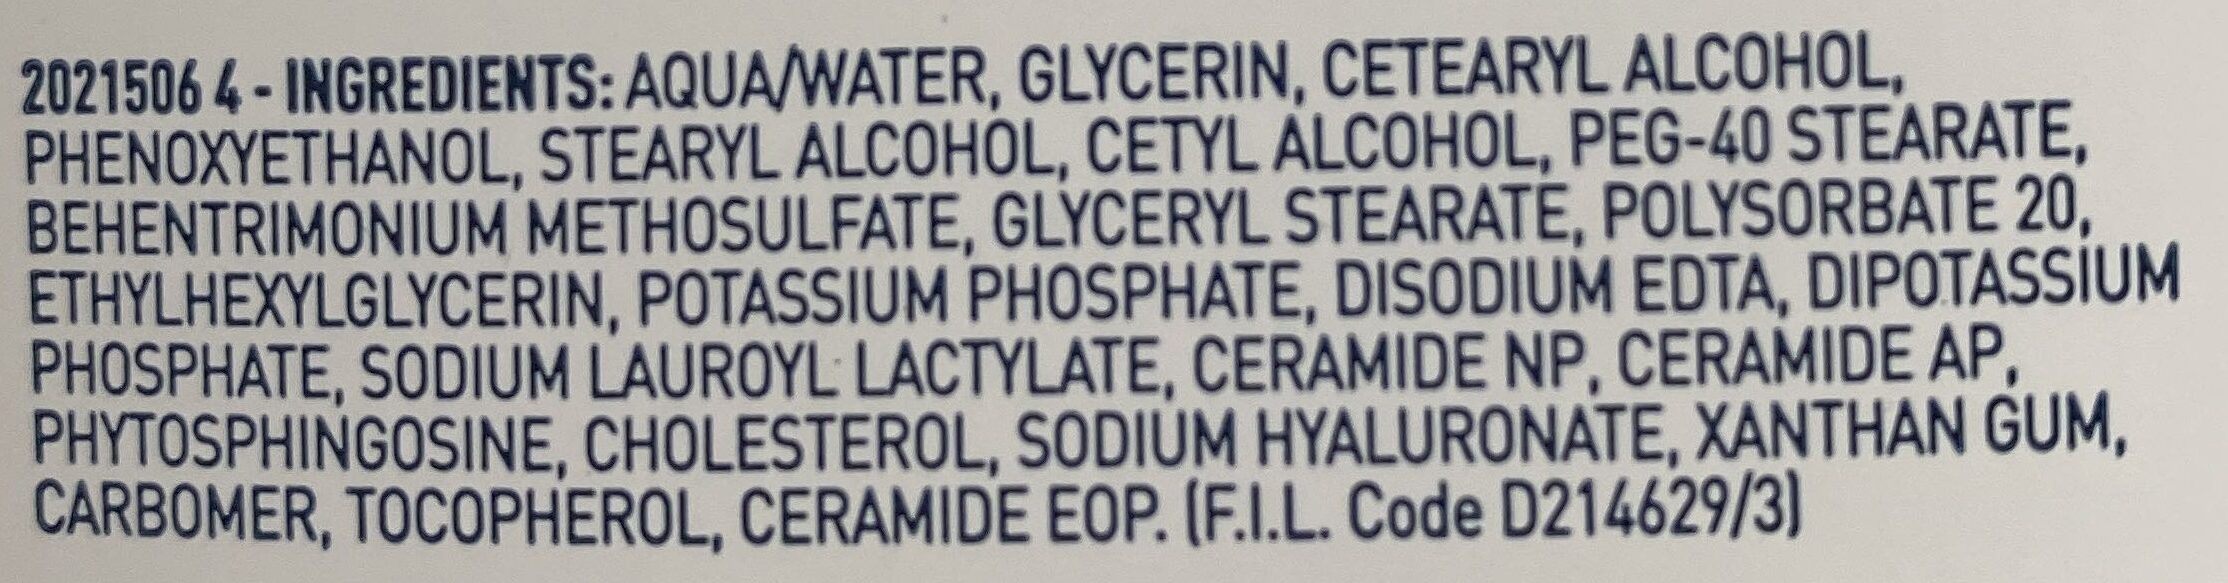 Hydrating cleanser - Ingredients - en